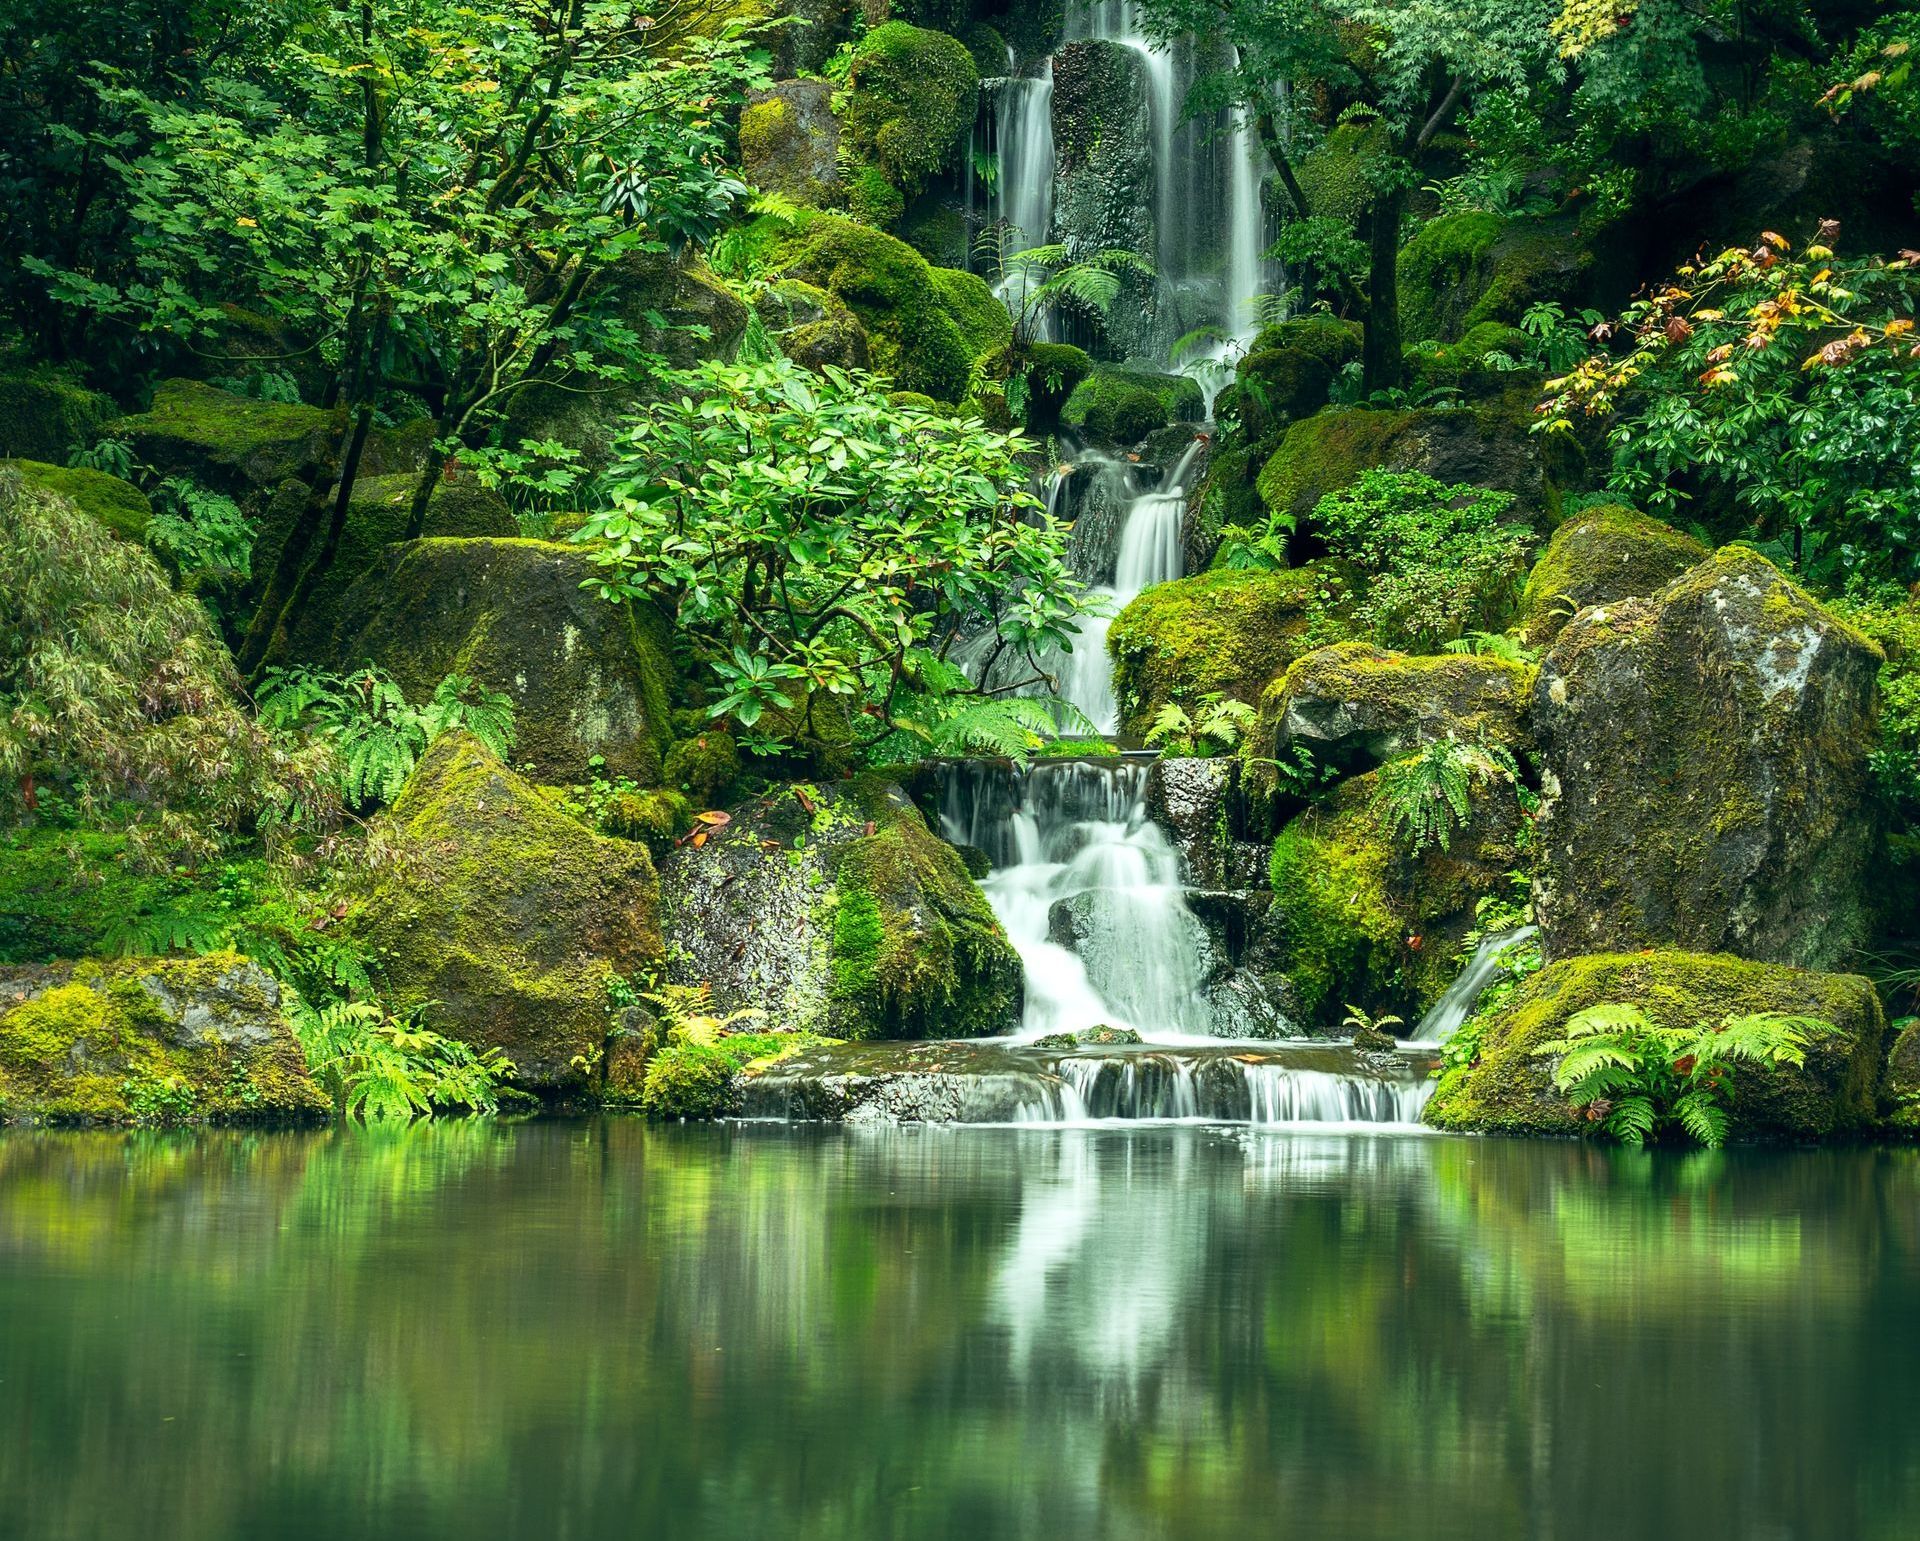 Paisagem com muito verde, plantas, pedras e cachoeira